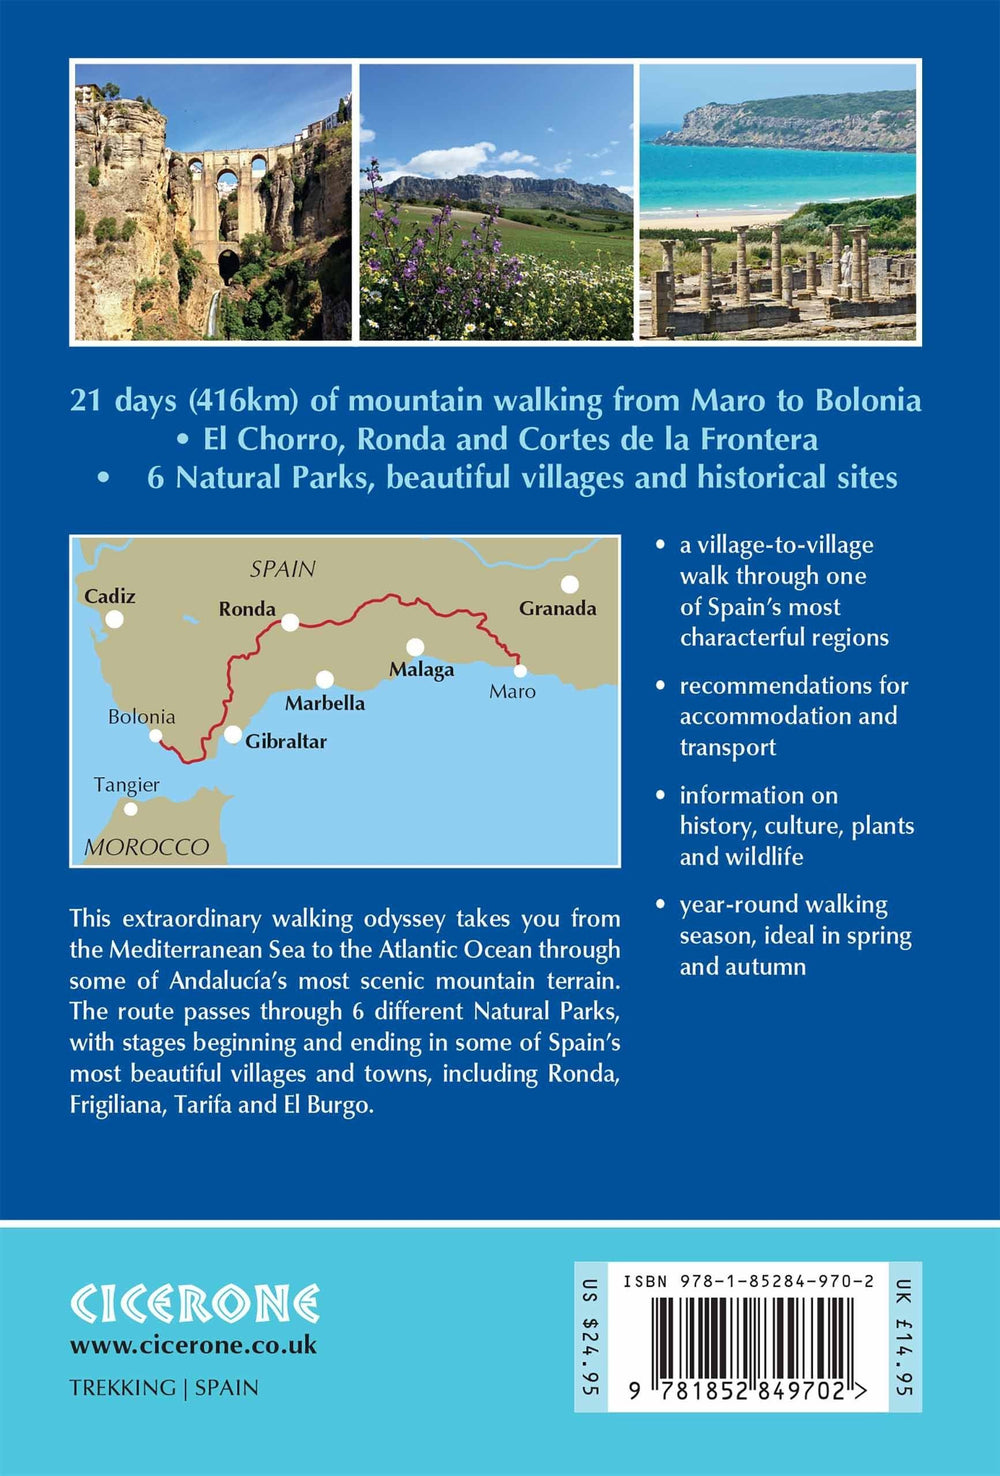 Guide de randonnées (en anglais) - Andalucian Coast to Coast, from the Mediterranean to the Atlantic | Cicerone guide de randonnée Cicerone 